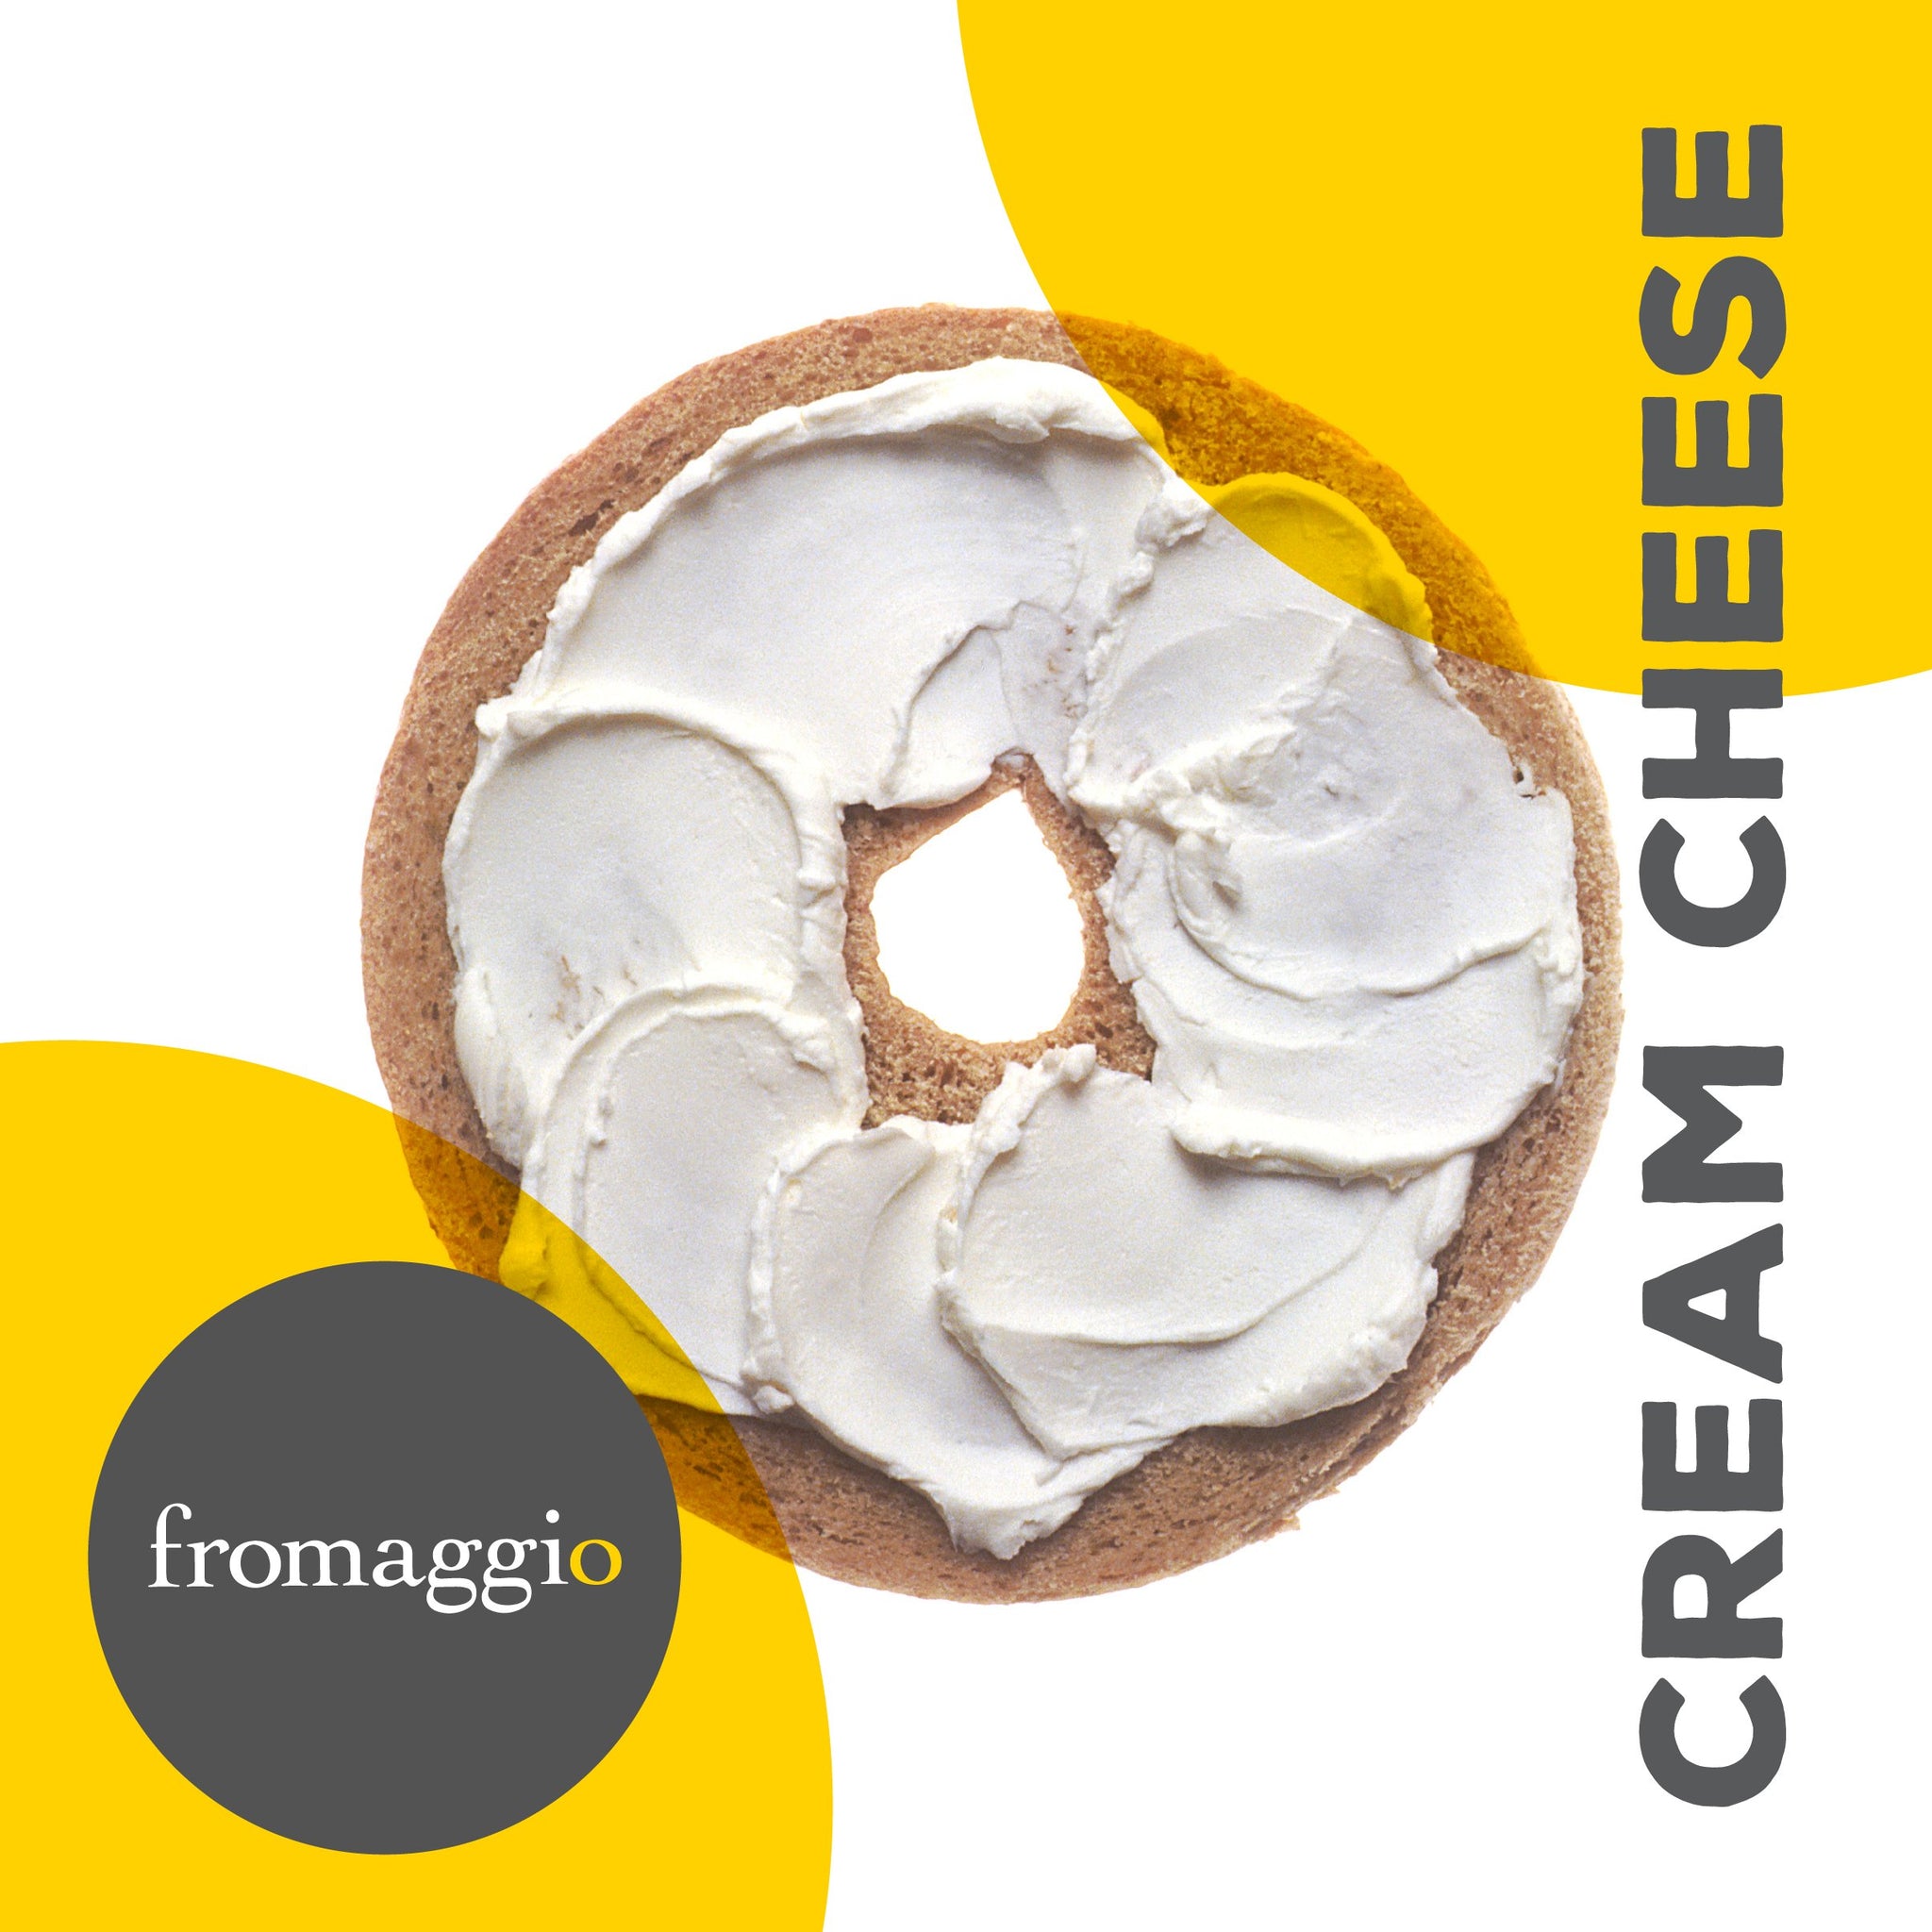 Cream Cheese Culture - fromaggio